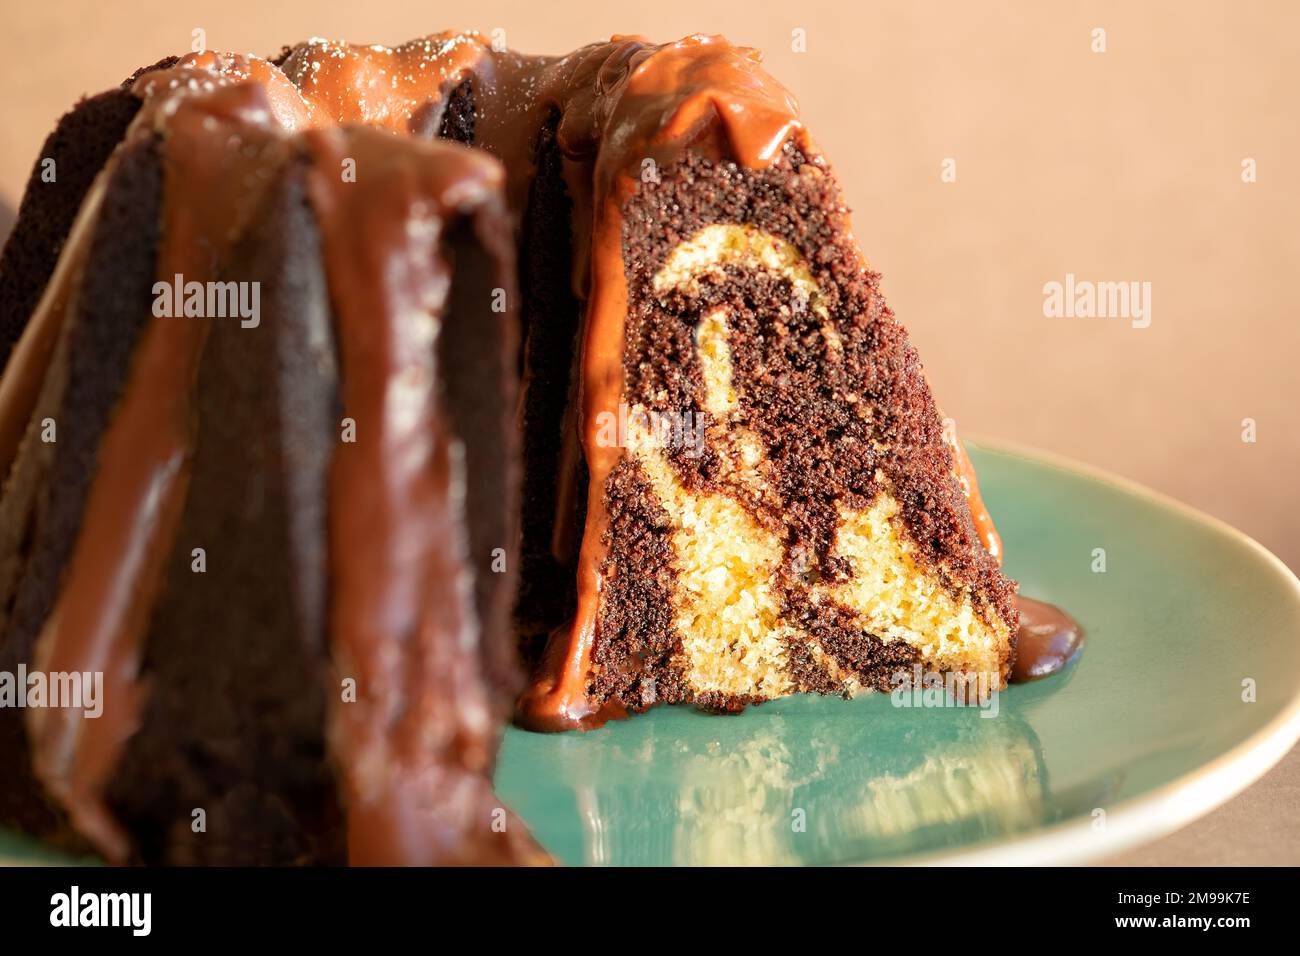 Una torta Bundt marmorizzata al cioccolato e alla vaniglia con un condimento al cioccolato al latte. La torta viene tagliata e placcata Foto Stock